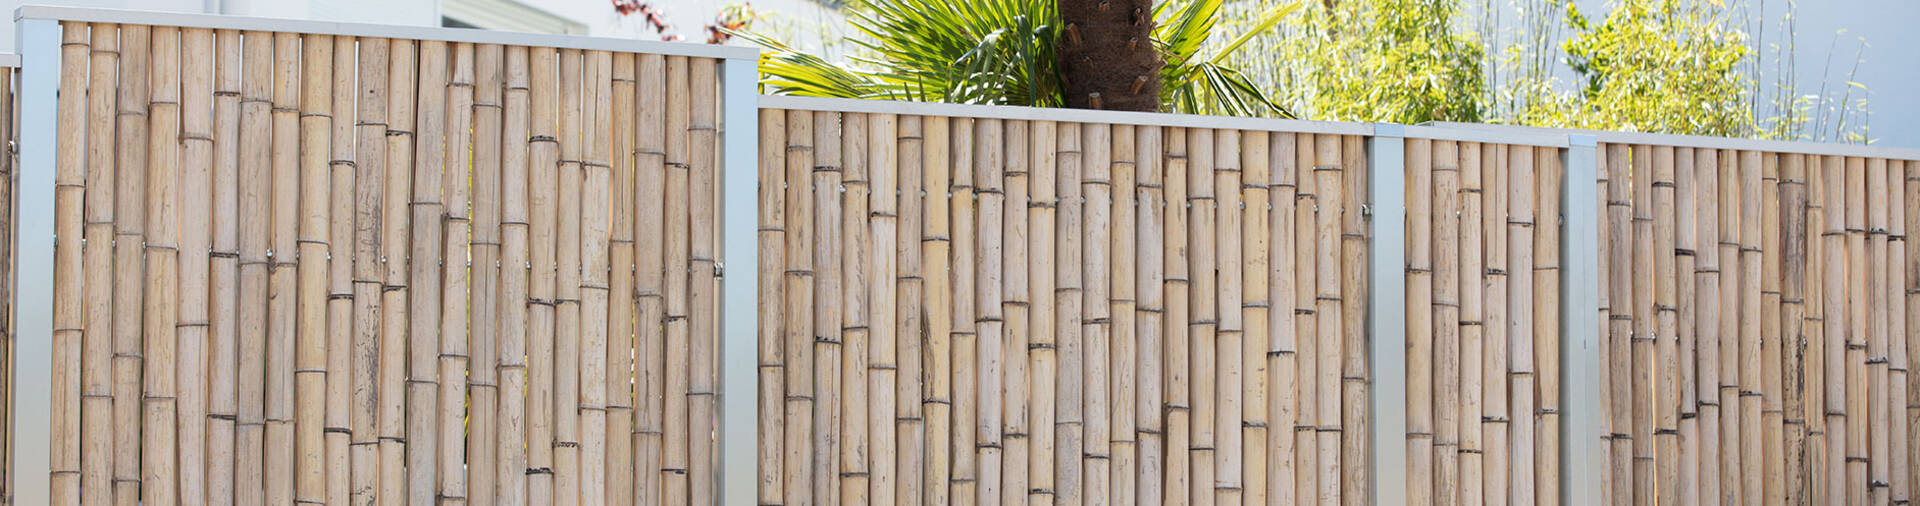 Bambus ist ein gut zu verarbeitendes Material und gibt Ihrem Garten ein fernöstliches Ambiente.  | © Zaunteam